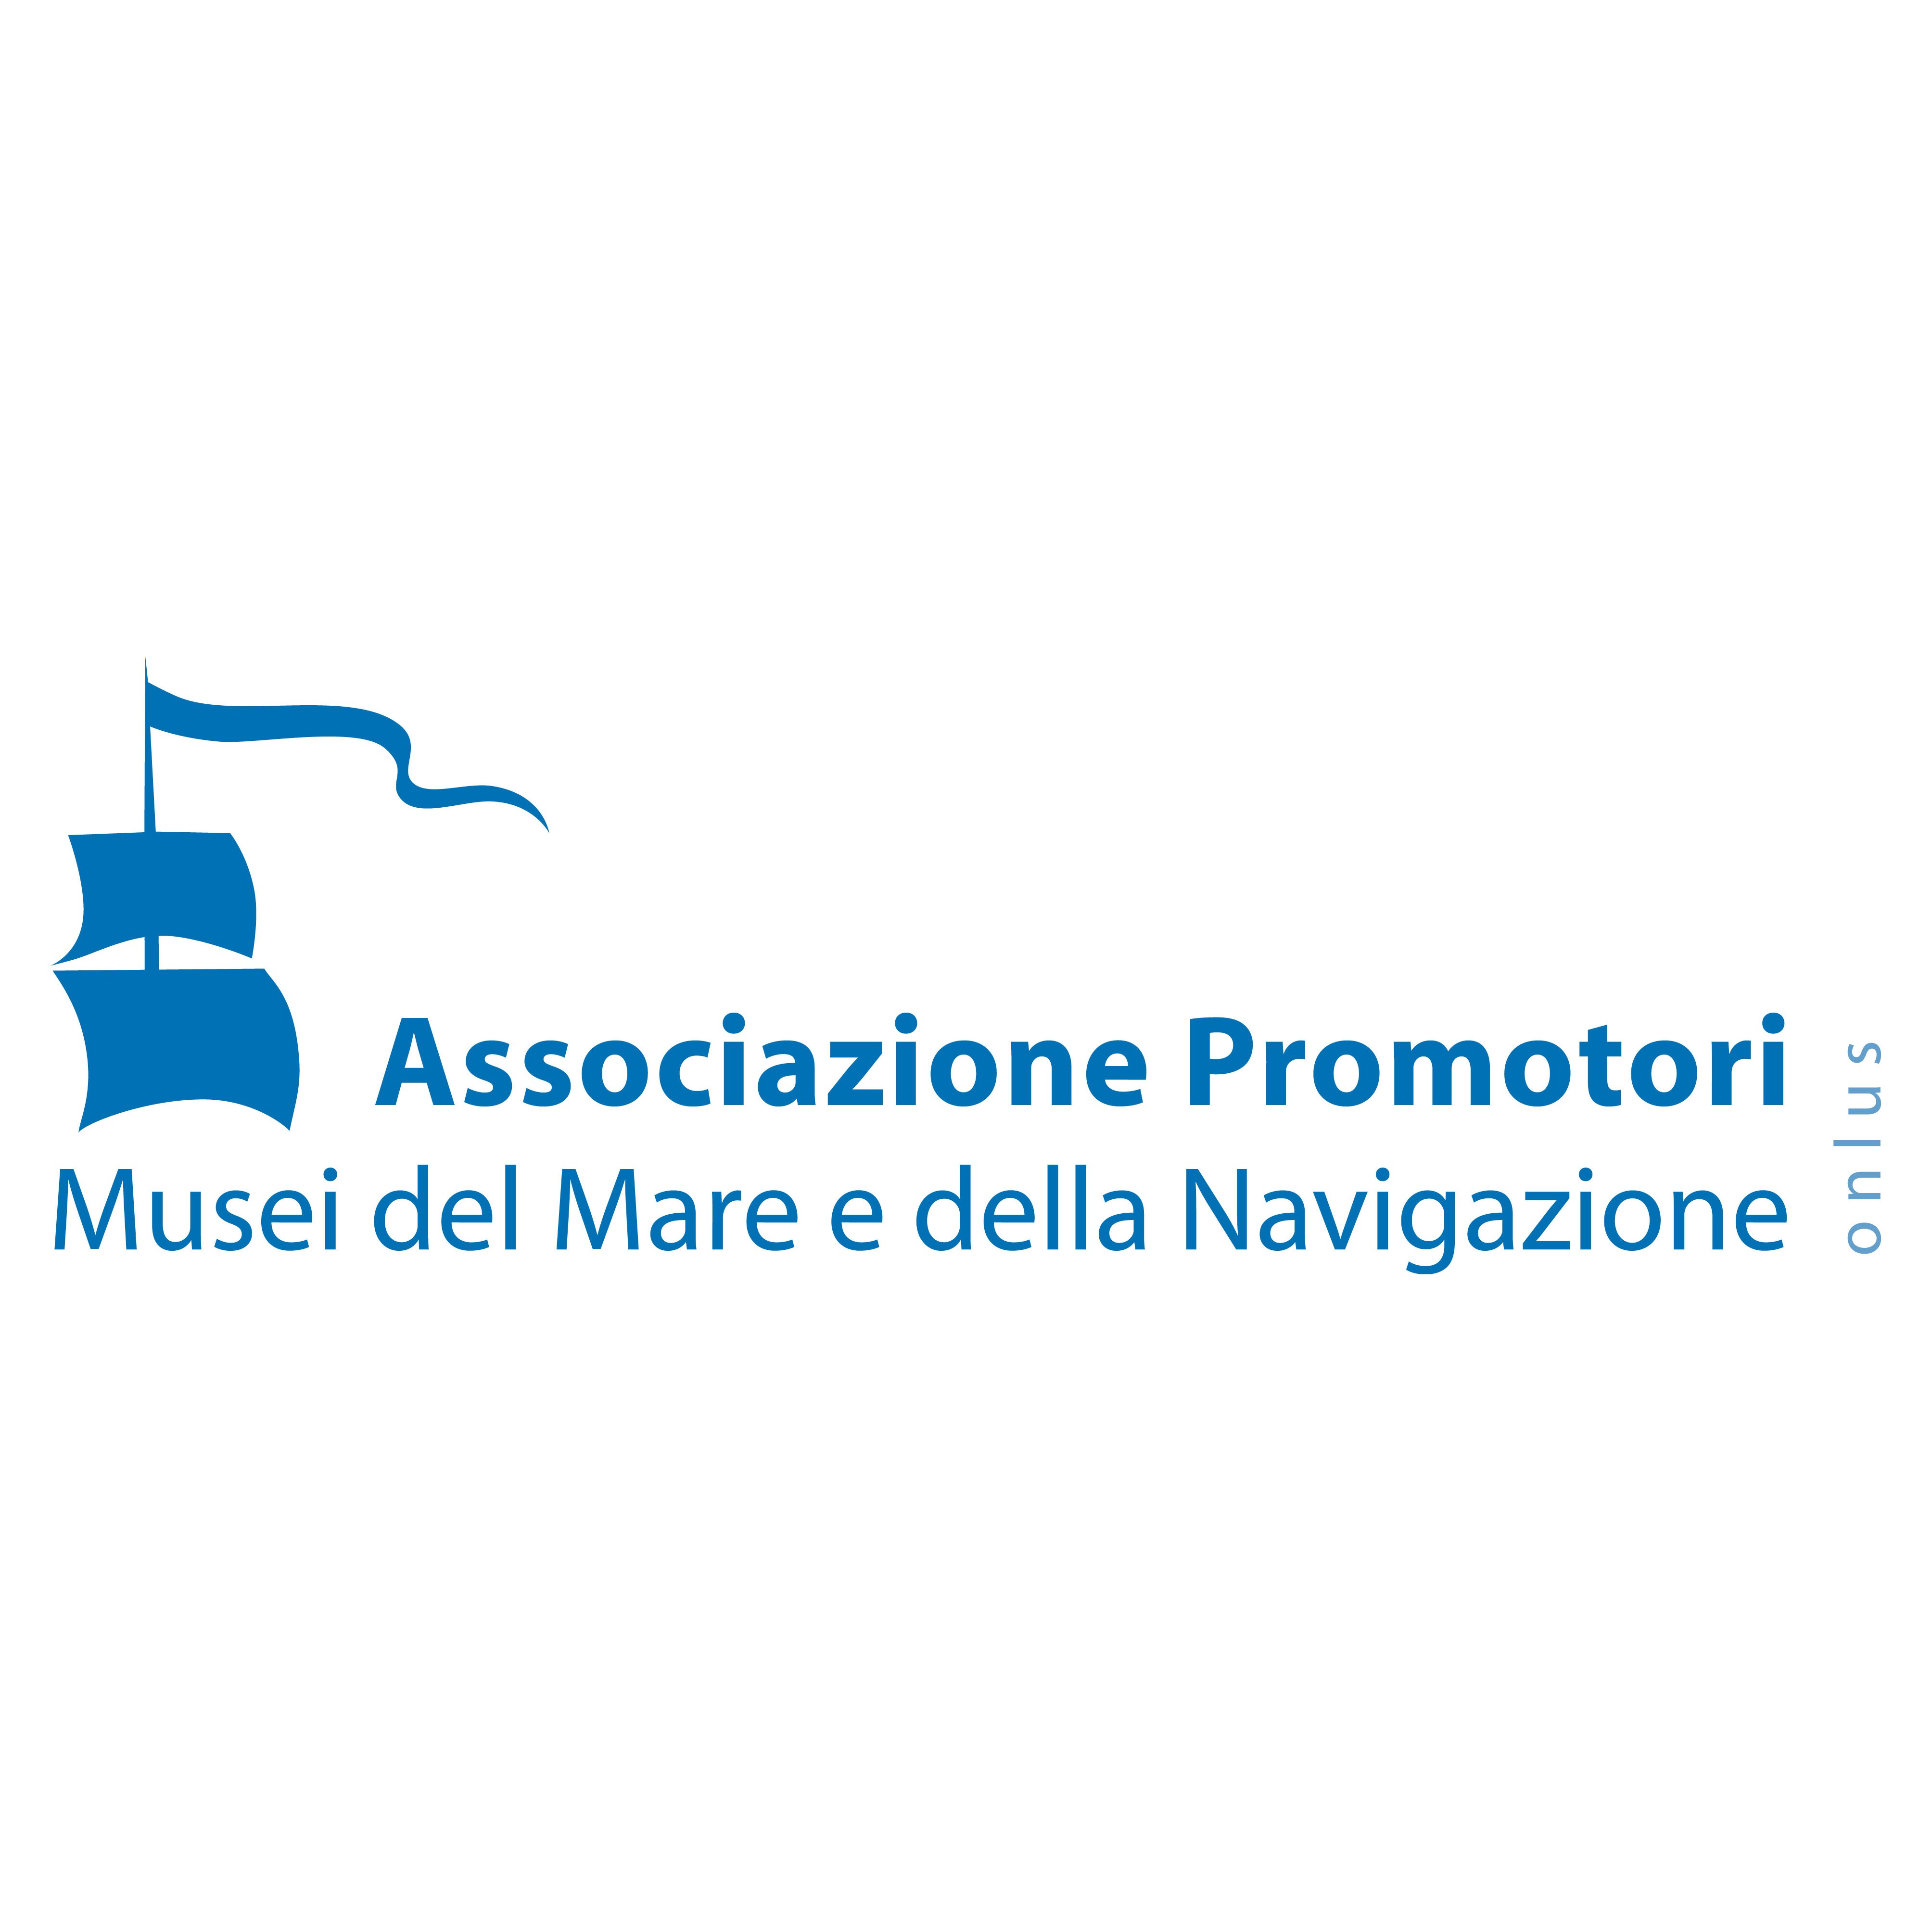 Associazione Promotori Musei del Mare e della Navigazione